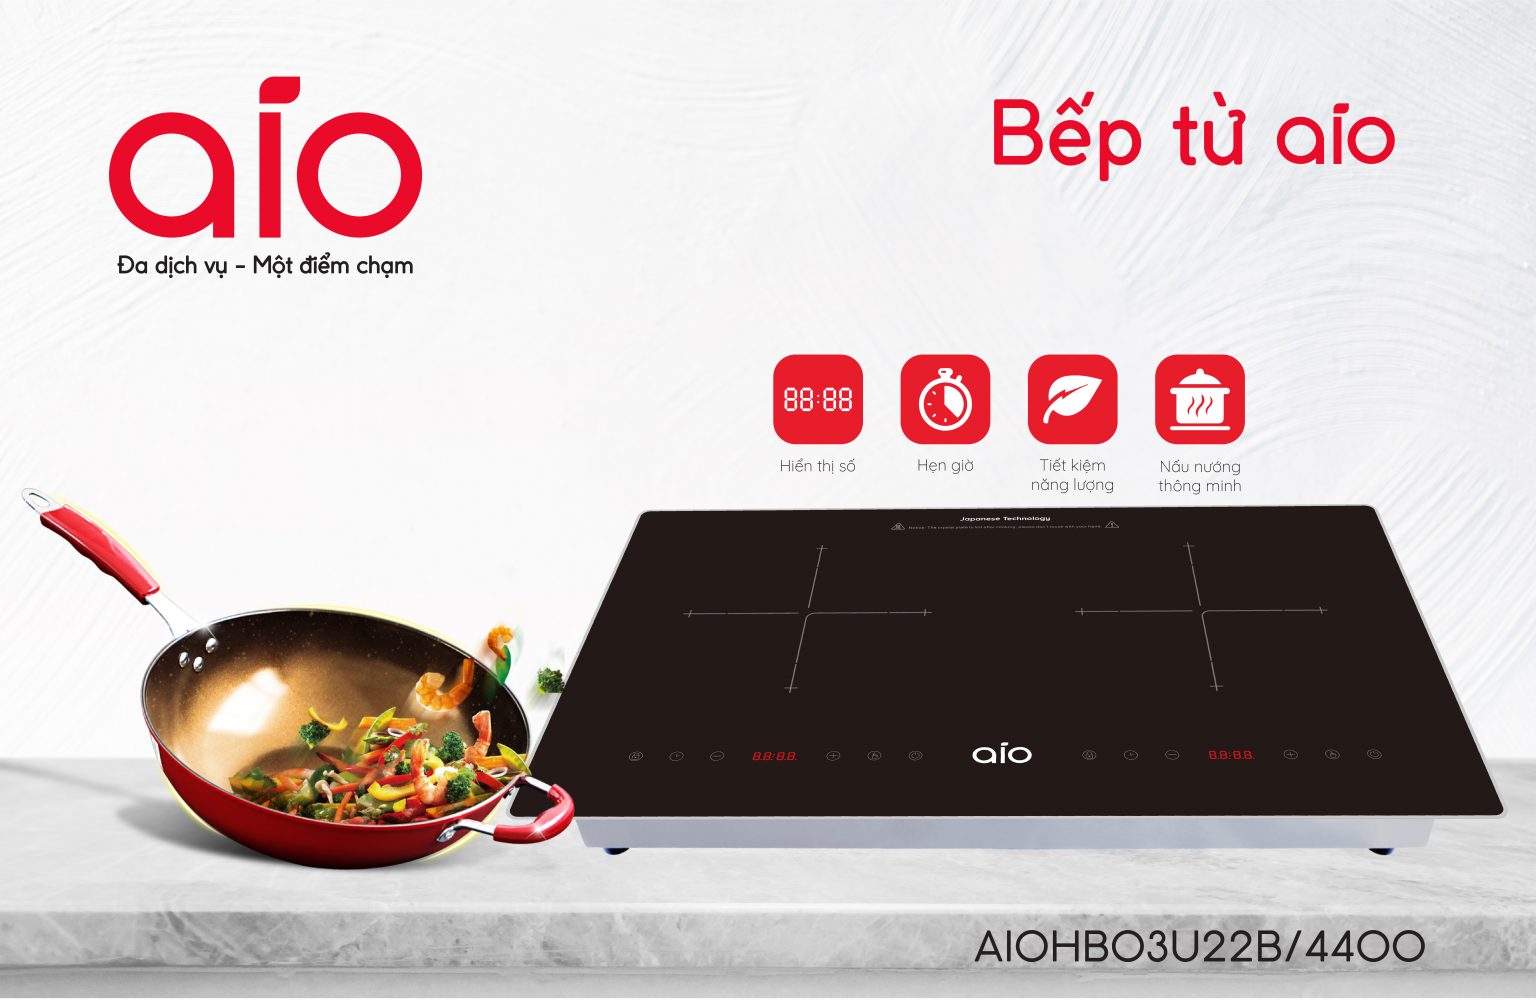 Nhà bếp AIO là lựa chọn hoàn hảo cho ngôi nhà của bạn. Khám phá hình ảnh liên quan đến từ khóa này để tìm hiểu về những tính năng tiện dụng và thiết kế sang trọng của nhà bếp AIO để có được một không gian nấu ăn chuyên nghiệp và đẳng cấp.